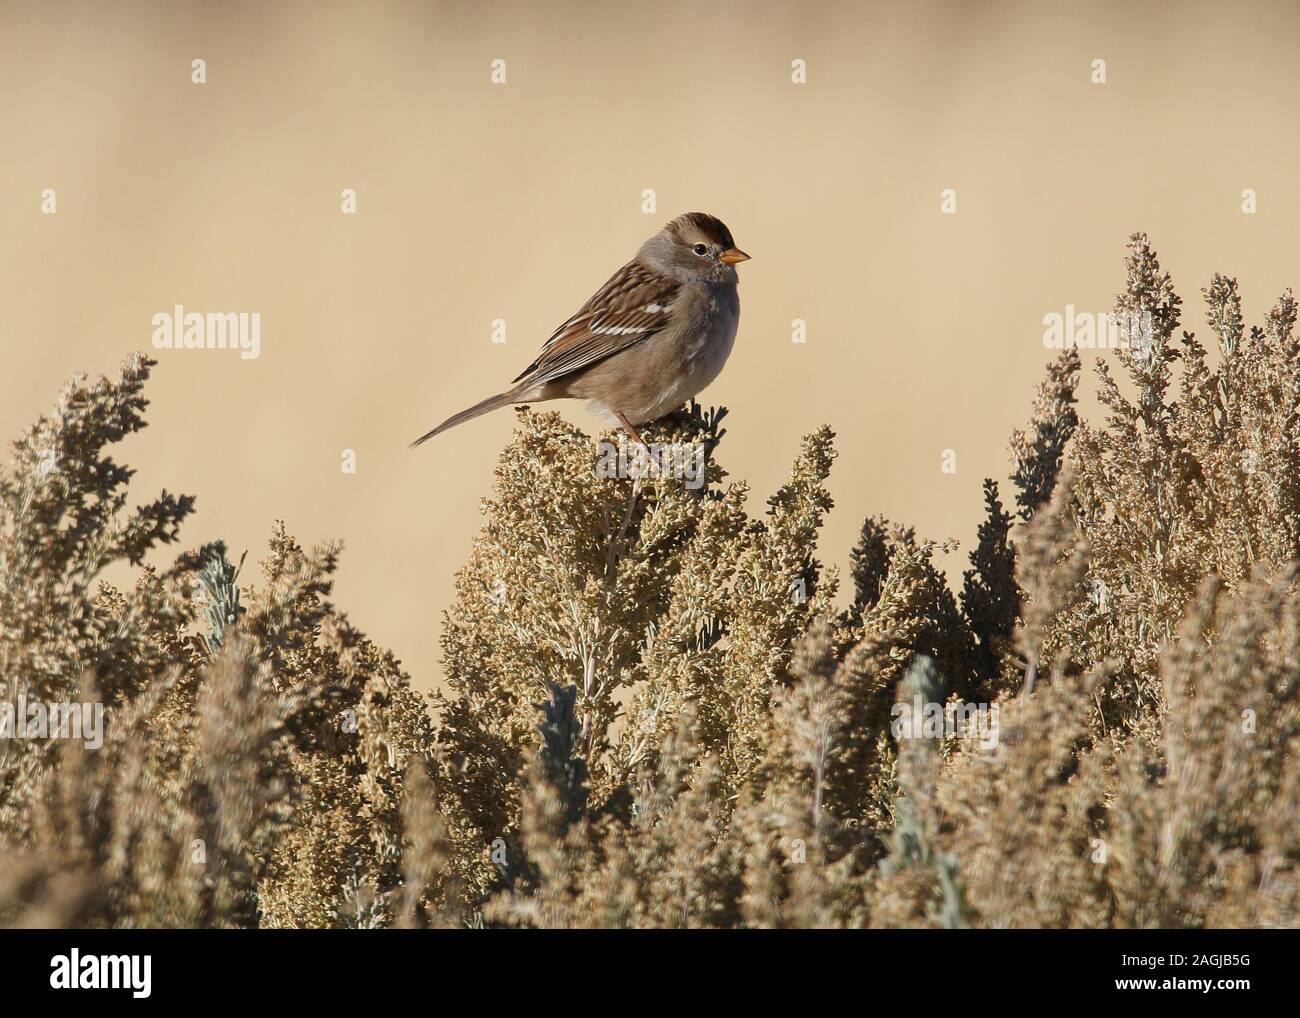 wild bird on desert sage brush Stock Photo